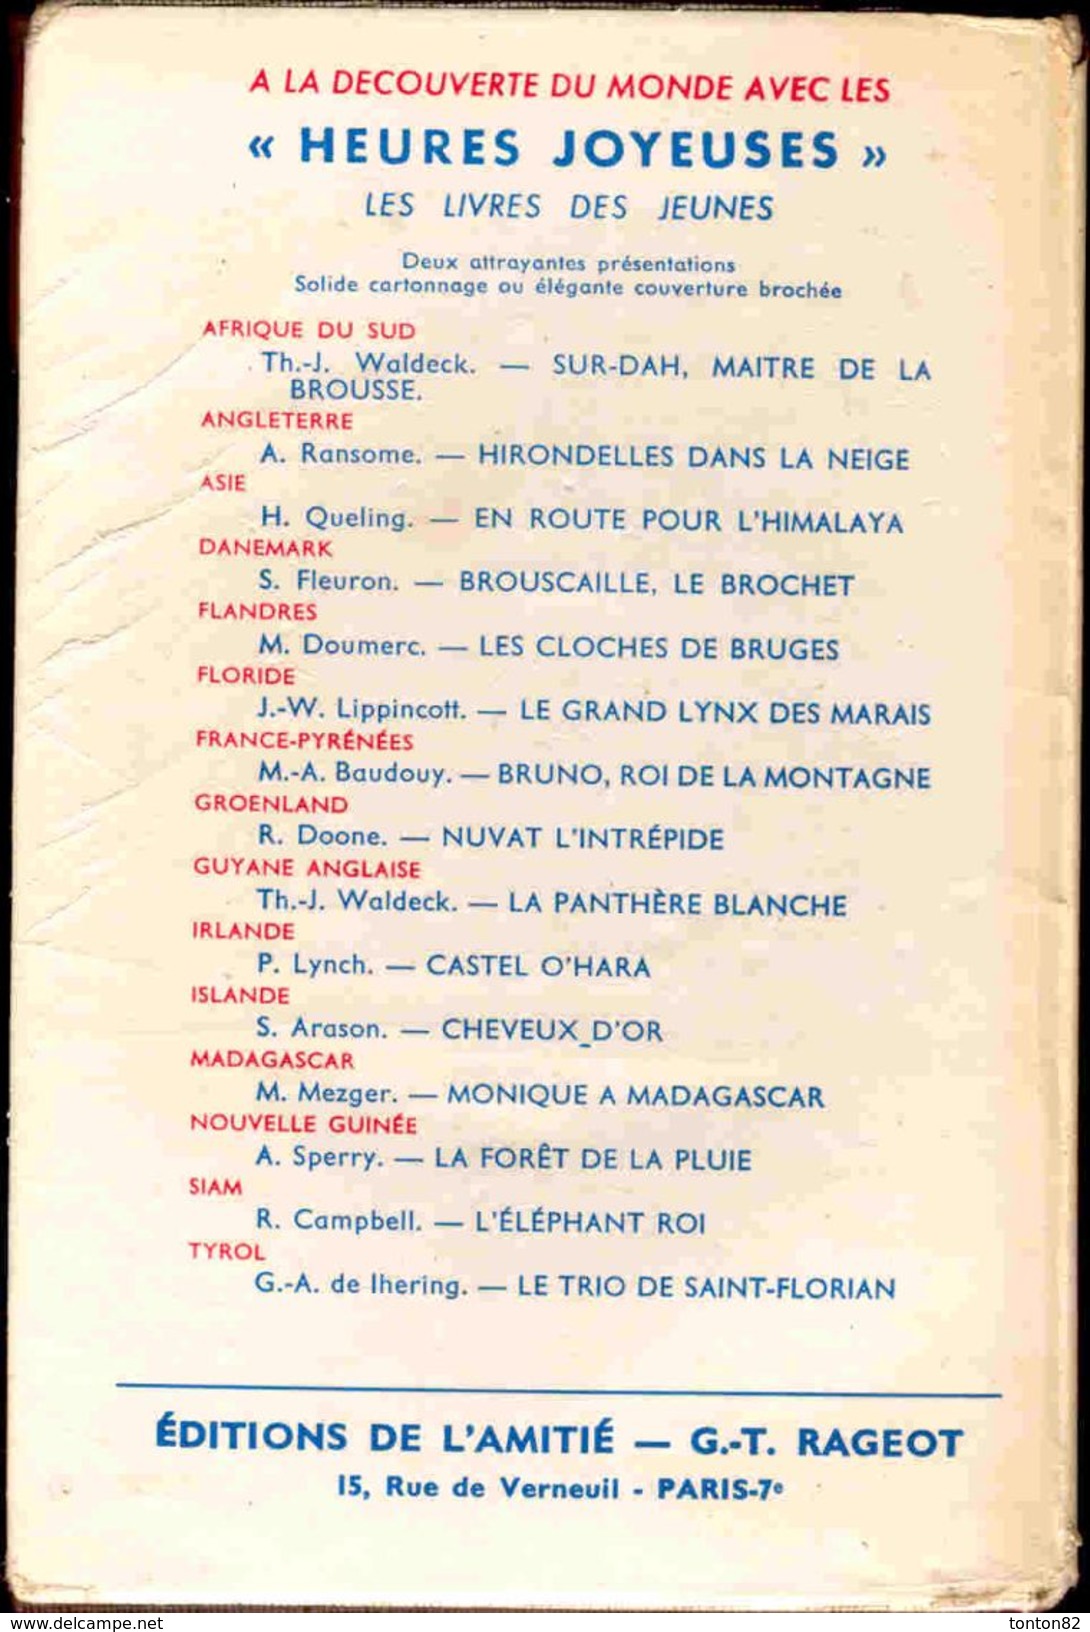 Collection Heures Joyeuses N° 102 - L´avalanche Du Folvent - Colette Nast - ( 1956 ) - Bibliotheque De L'Amitie